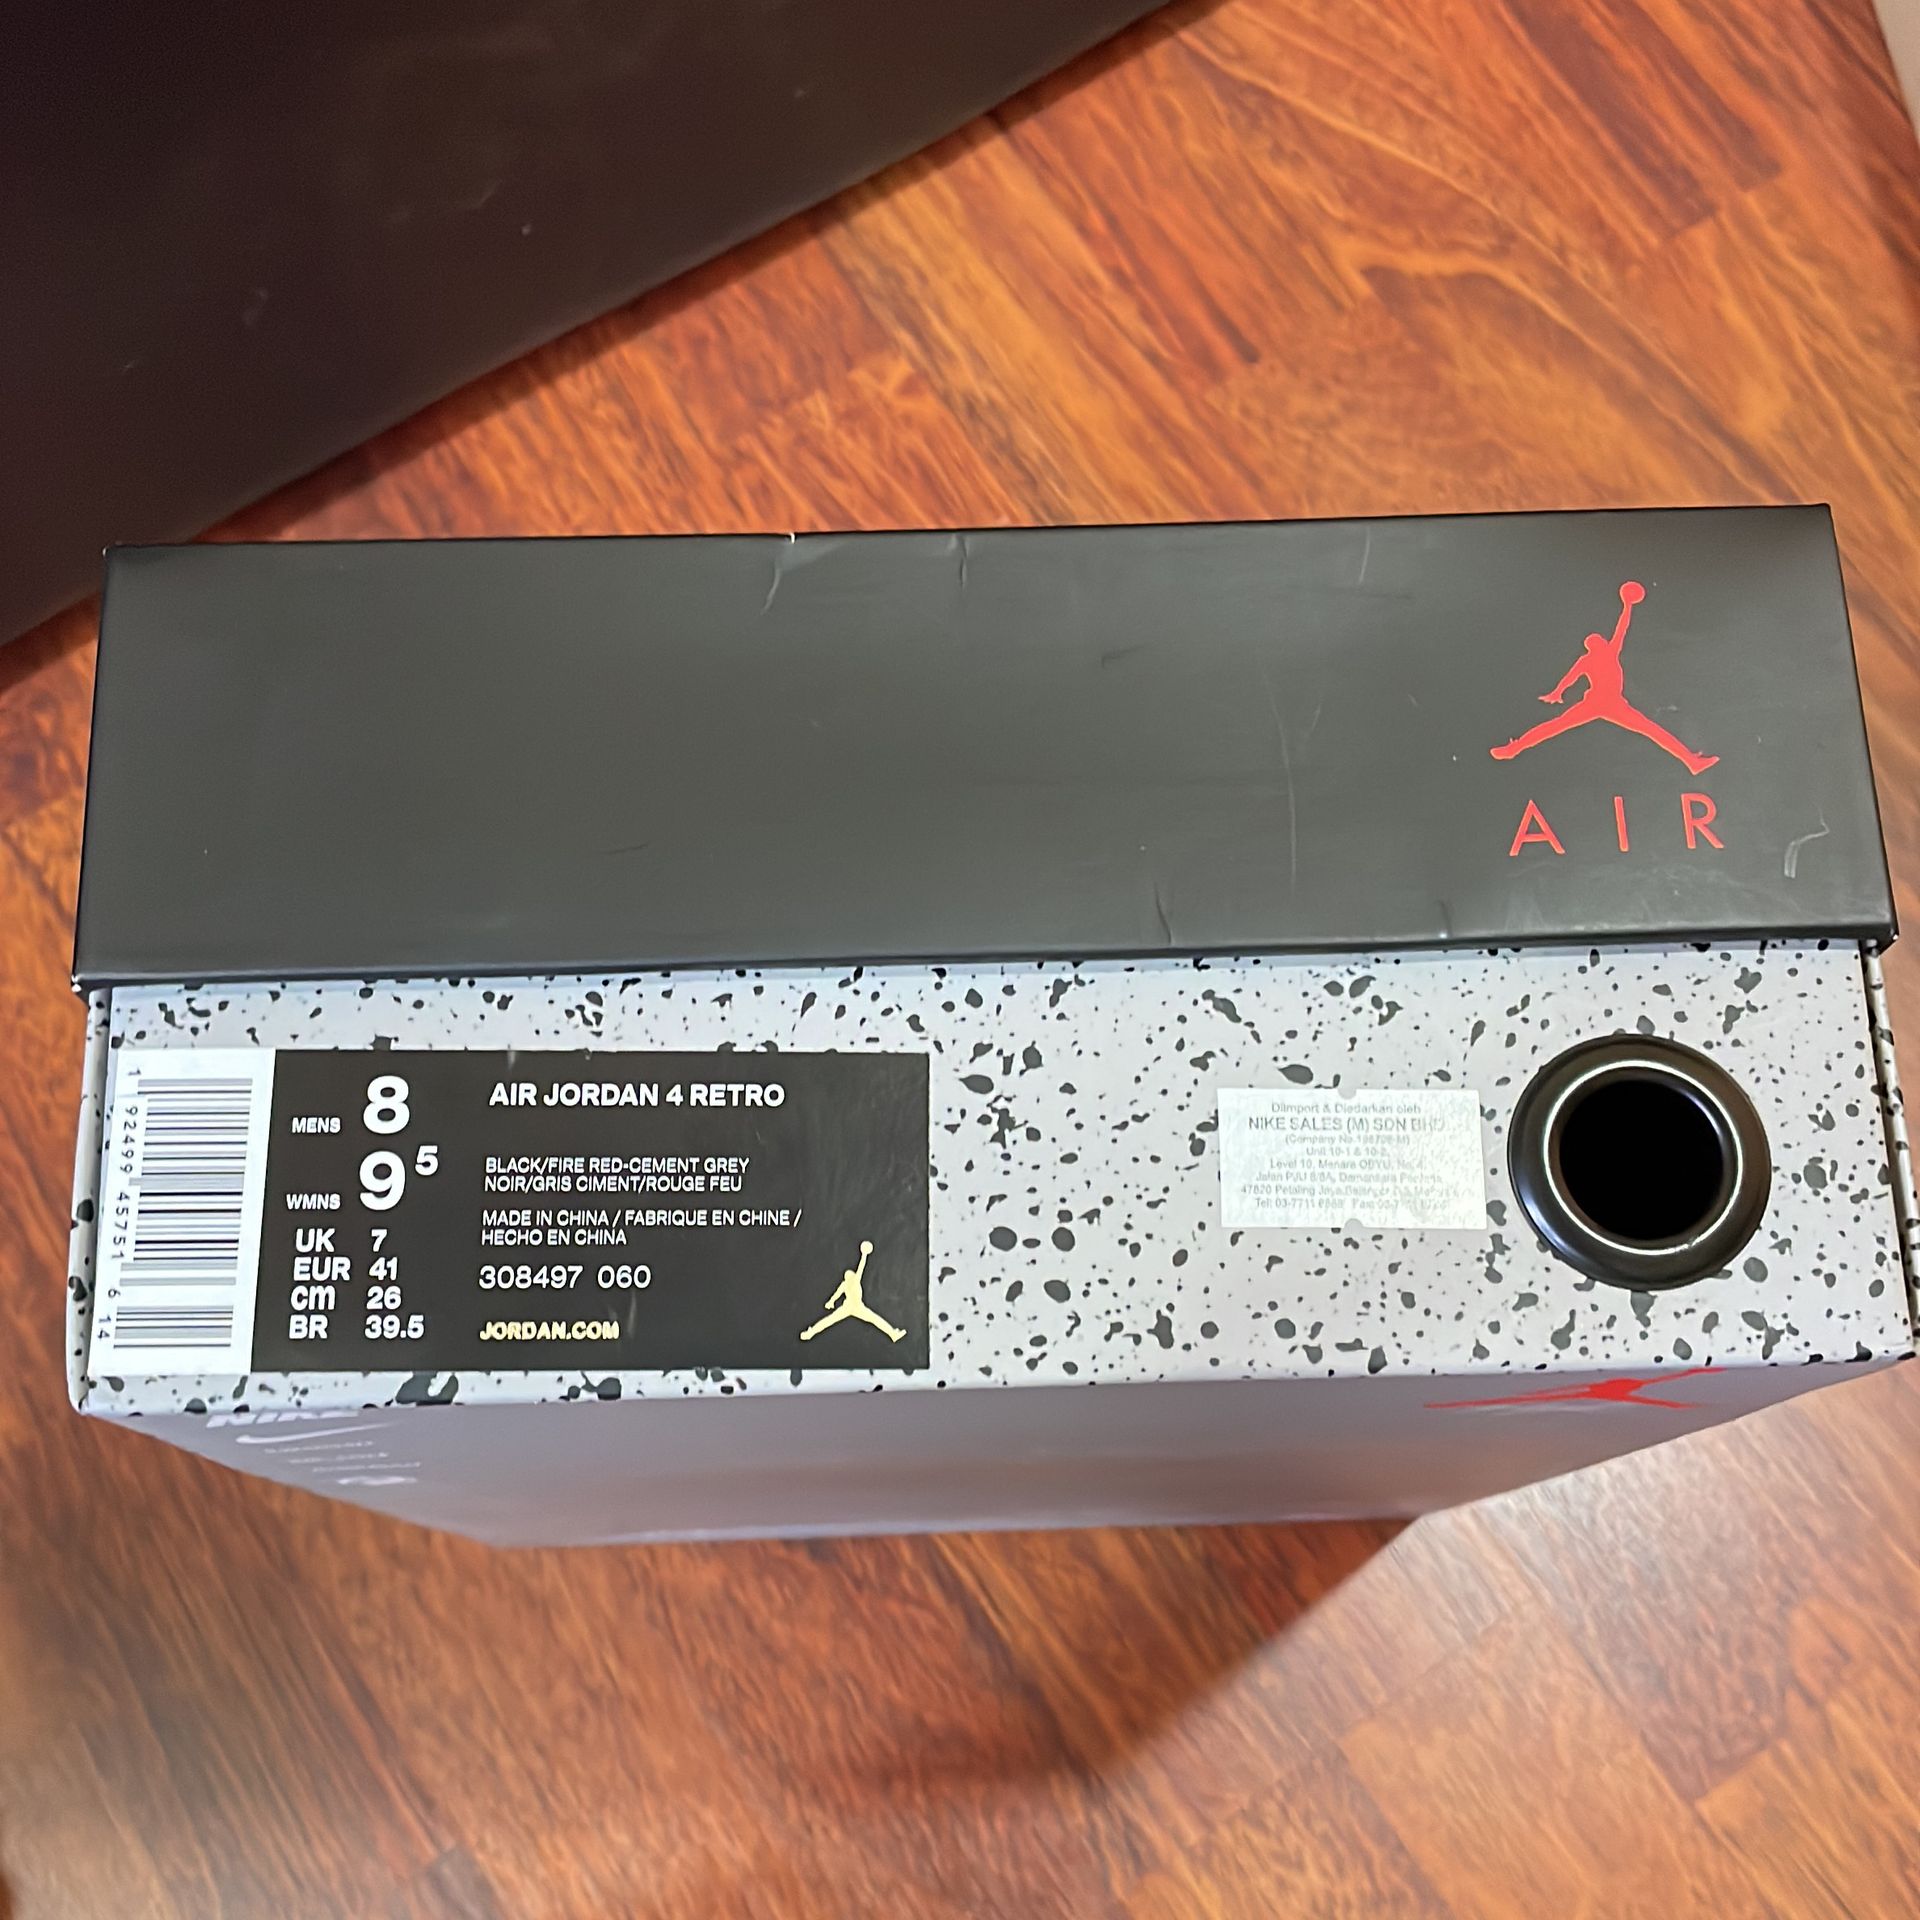 Air Jordan 4 Retro OG 'Bred' 2019